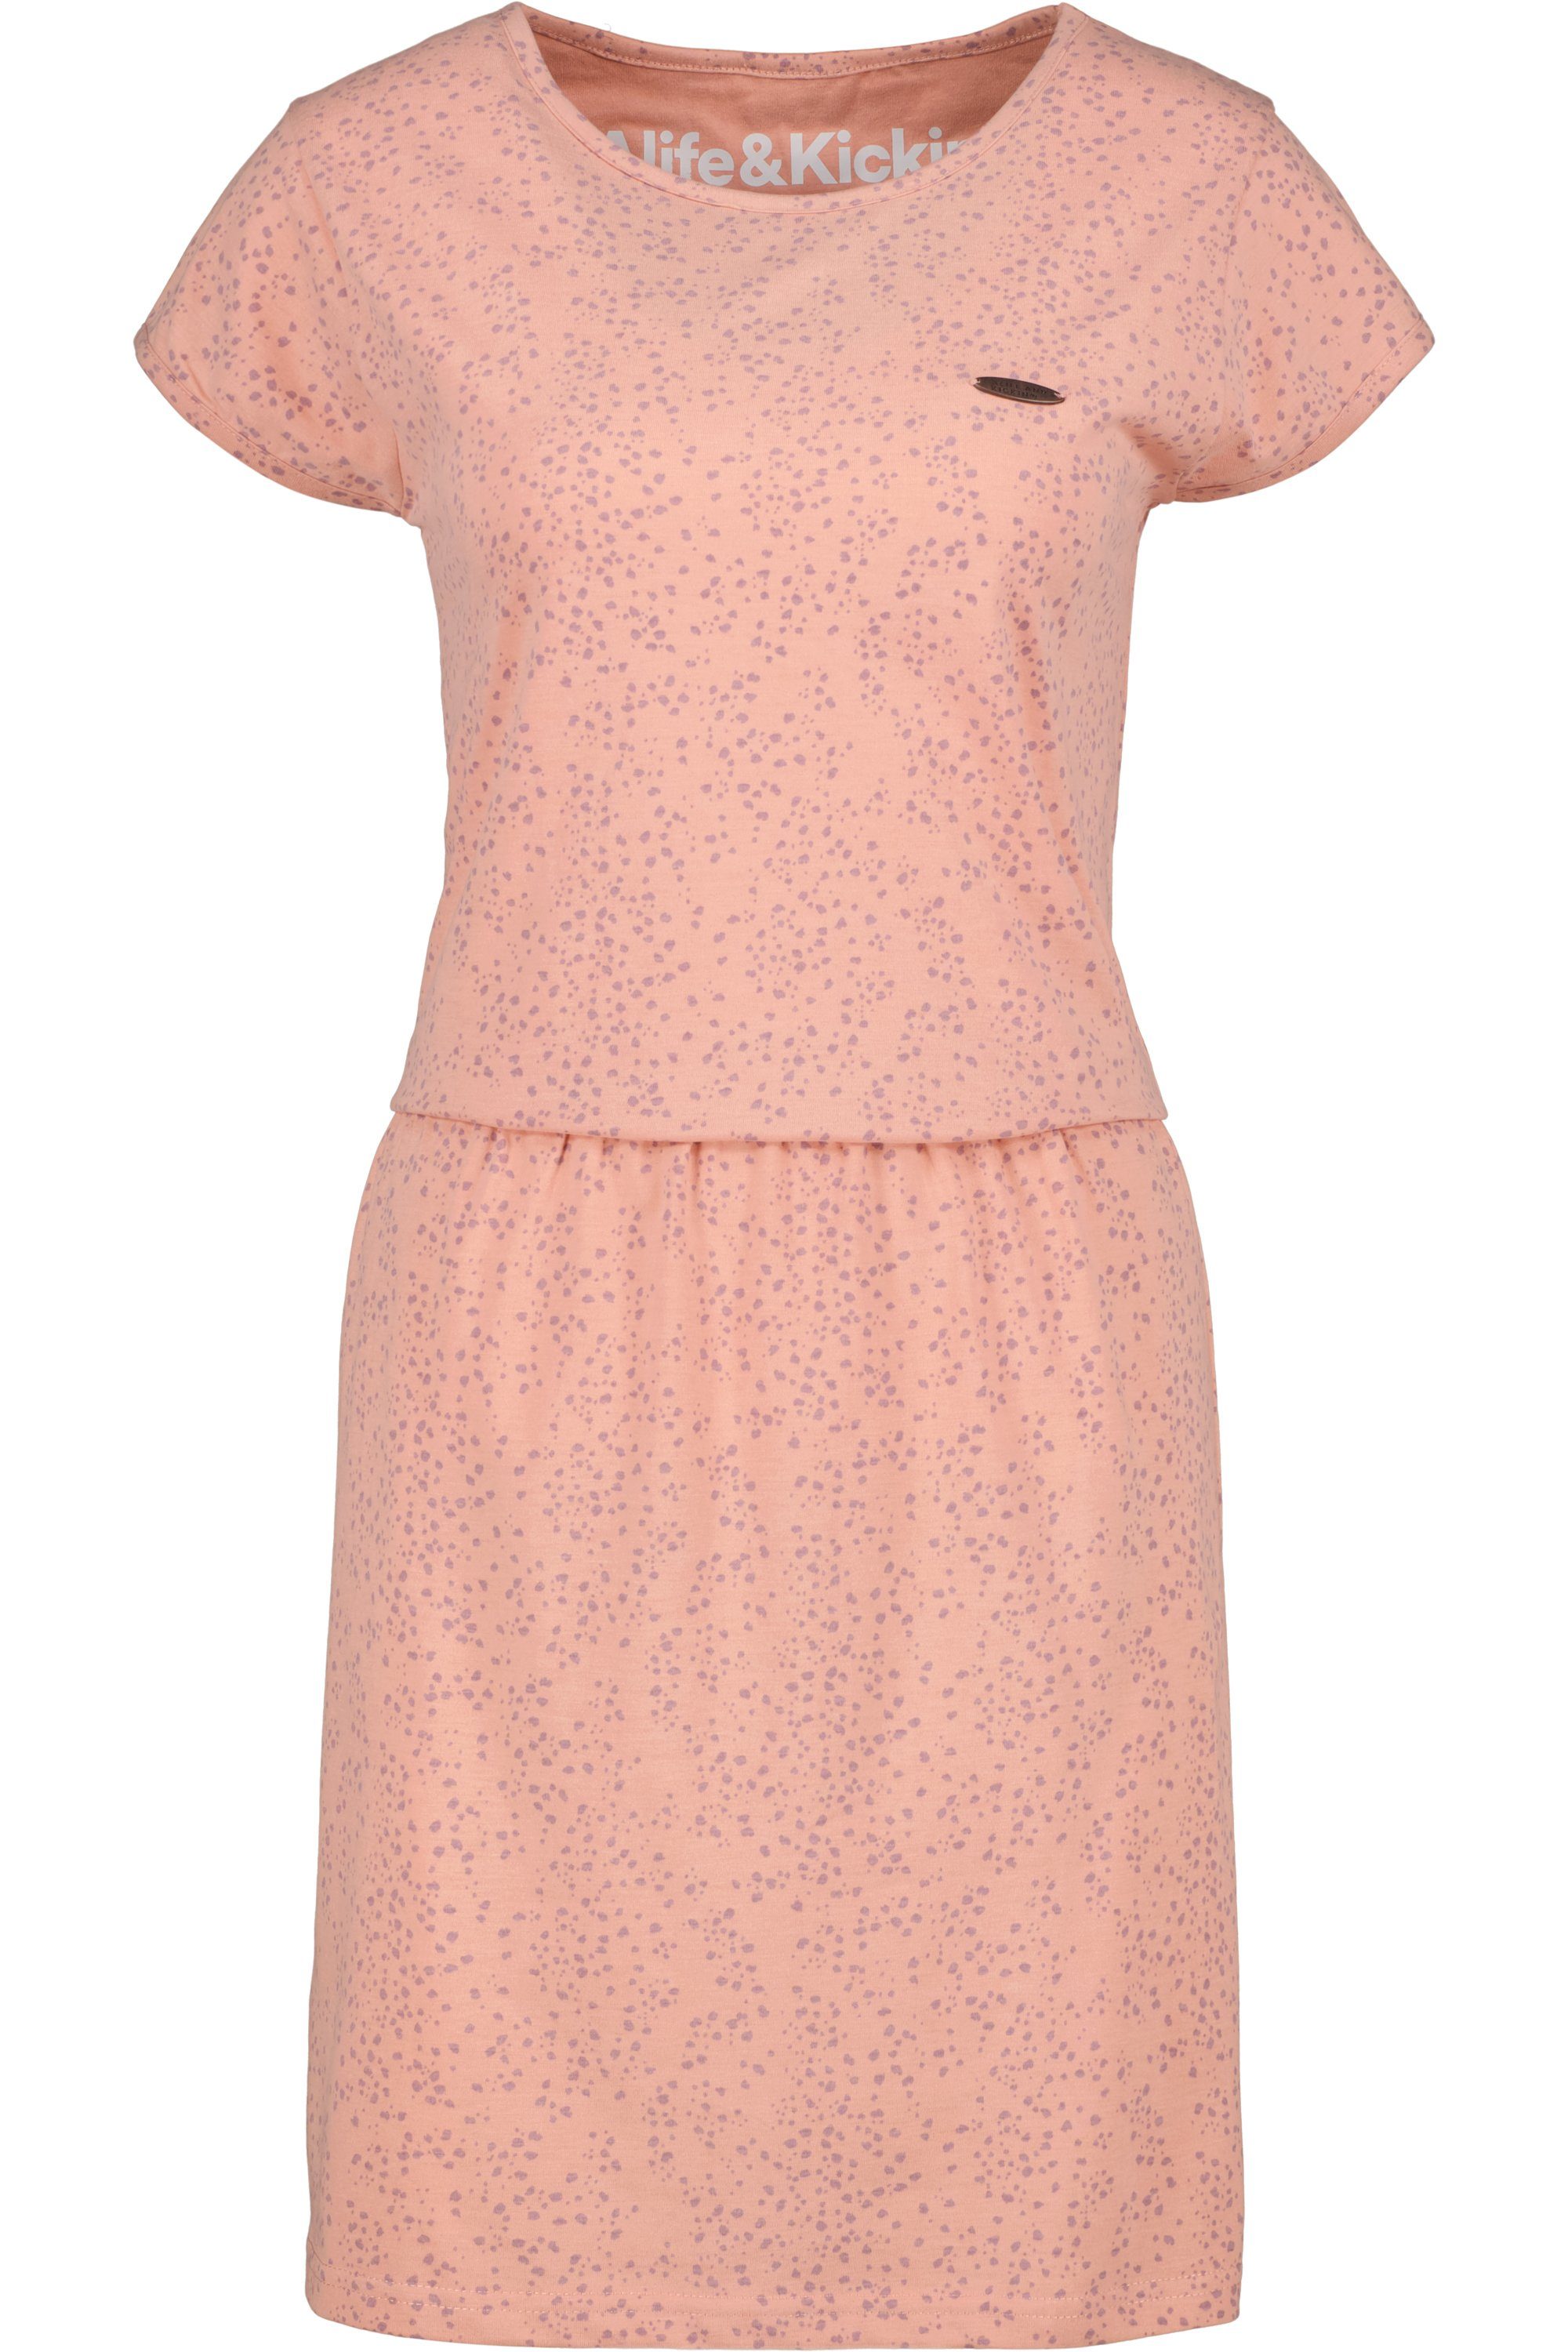 Dress Alife & Shirt ShannaAK Sommerkleid, melange Blusenkleid mahagonium B Kleid Kickin Damen